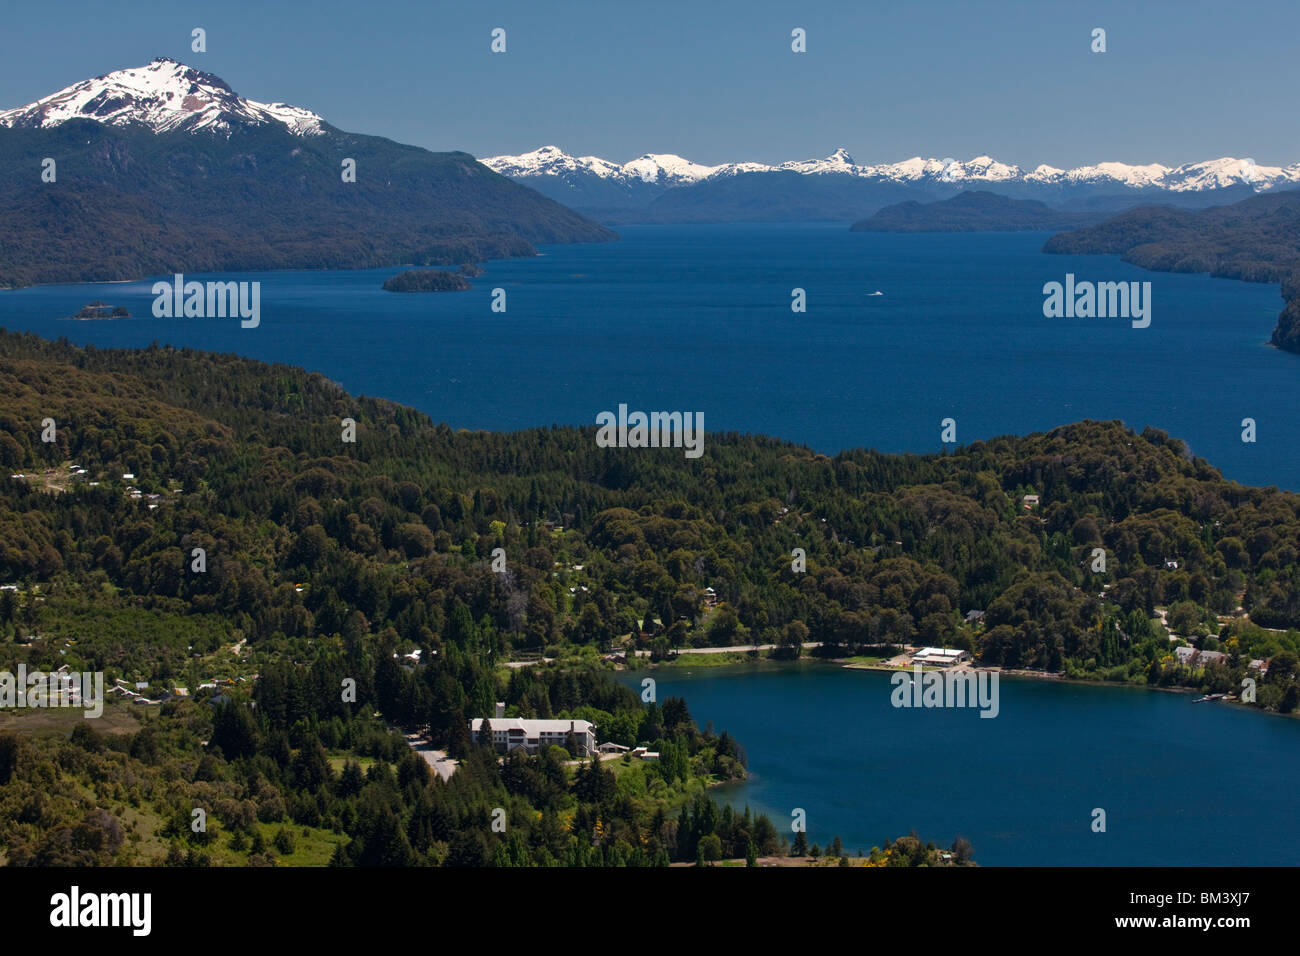 Des concentrations élevées de vista panoramique panorama célèbre bleu profond du lac Nahuel Huapi, Andes, Bariloche, Patagonie, Argentine, région de Rio Negro Banque D'Images